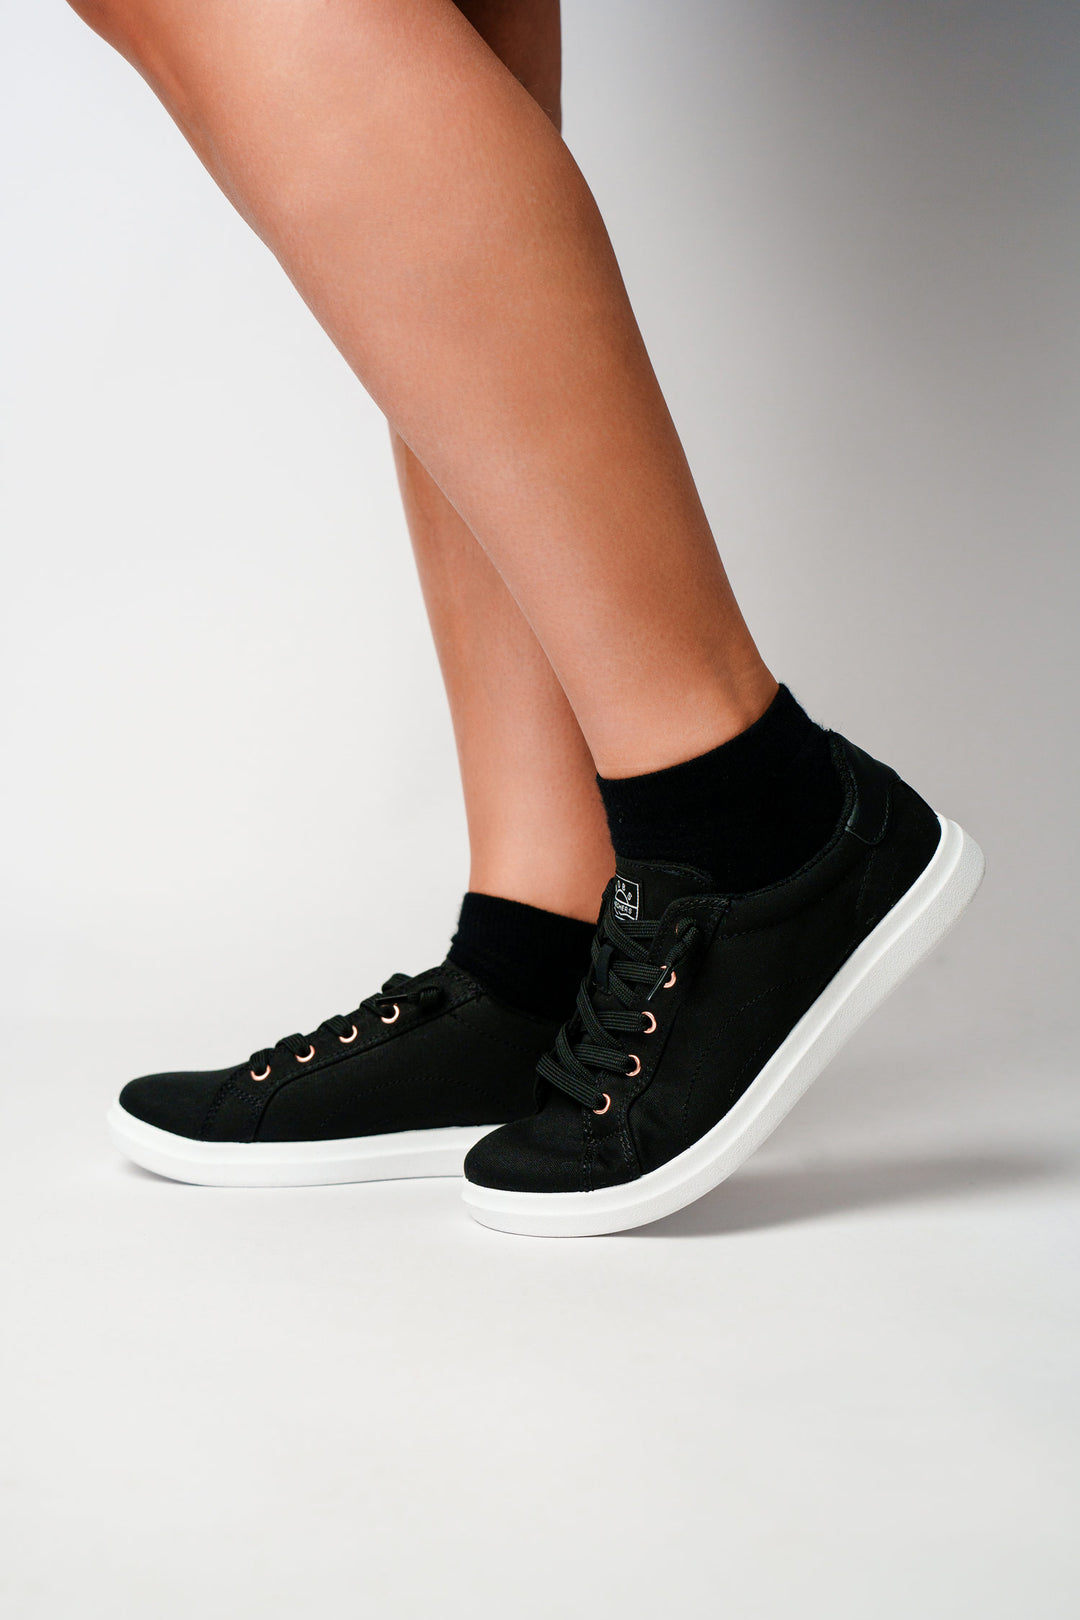 DIXXSON Sneaker Socken - schwarz - Unisex für Damen und Herren - perfekte Passform